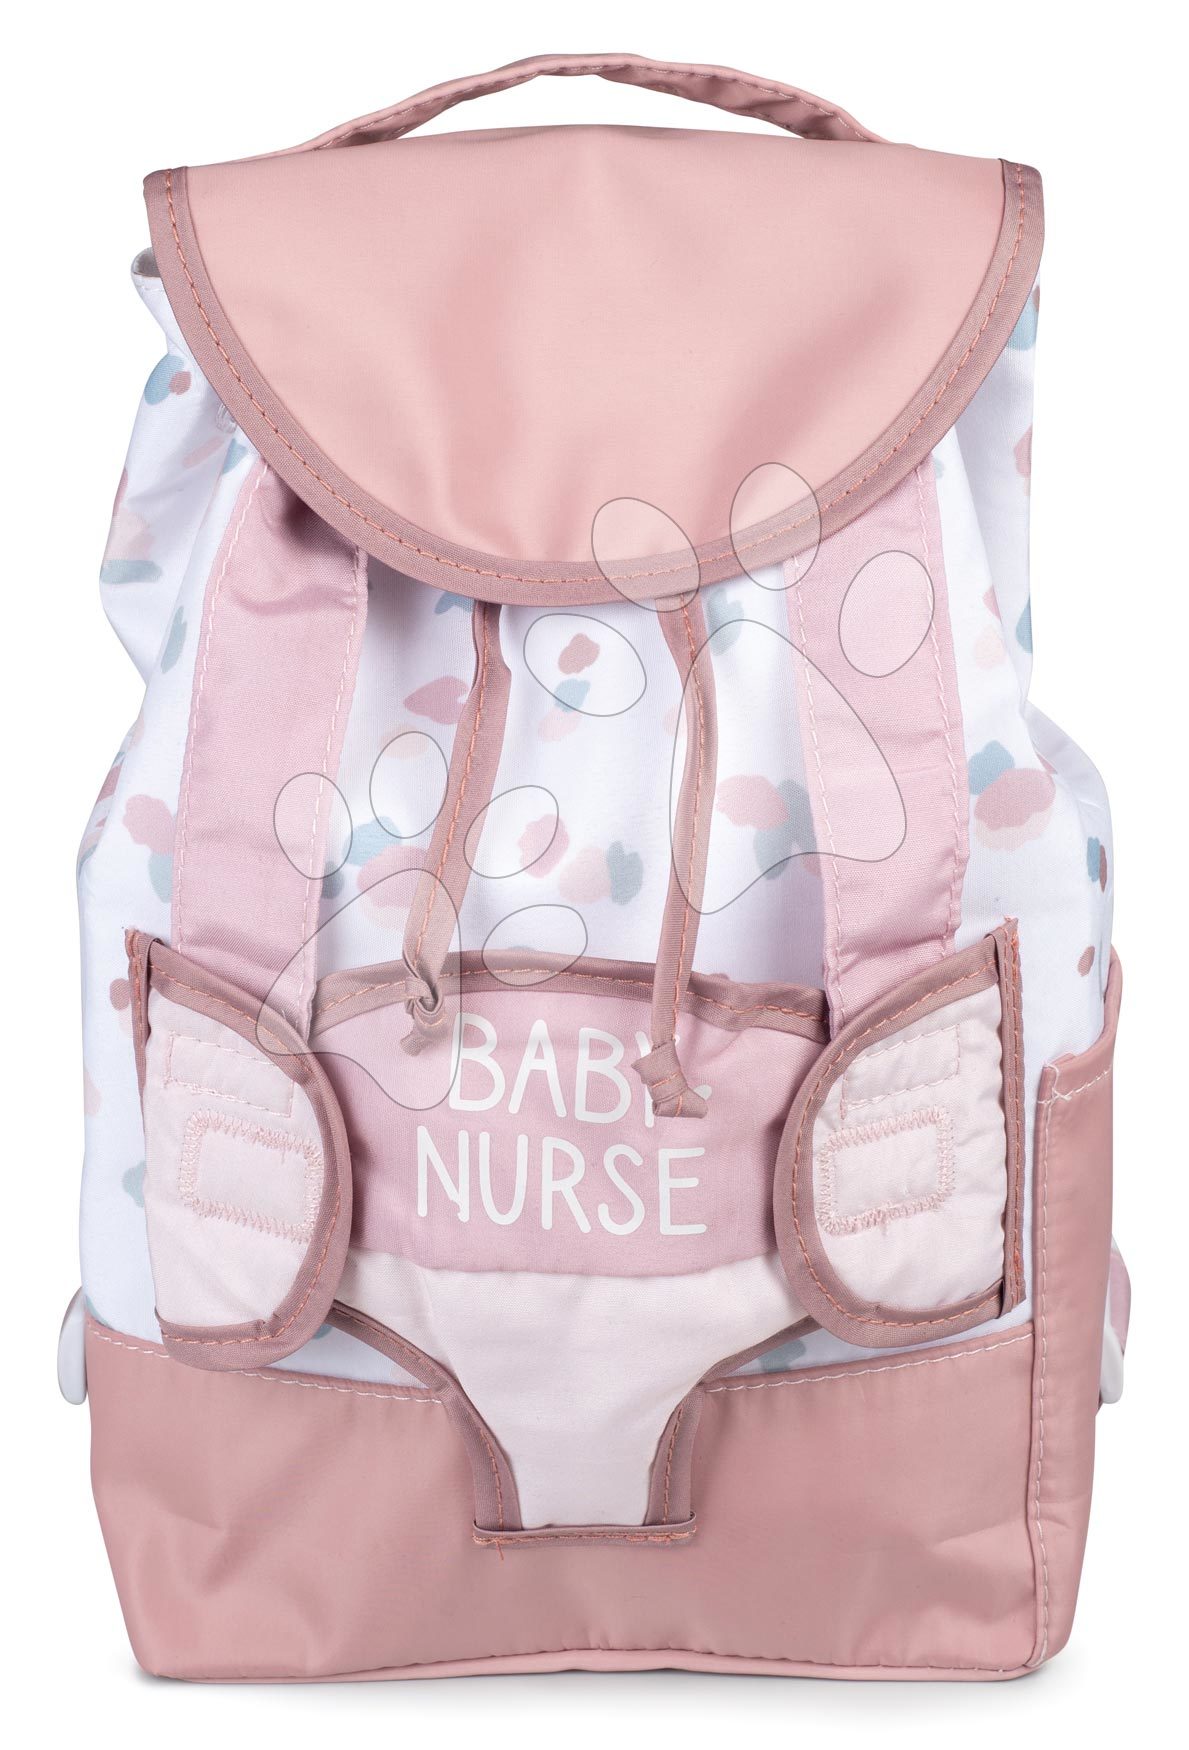 Klokanka s batohem Backpack Natur D\'Amour Baby Nurse Smoby pro 42 cm panenku nastavitelná ramena a kapsa pro láhev